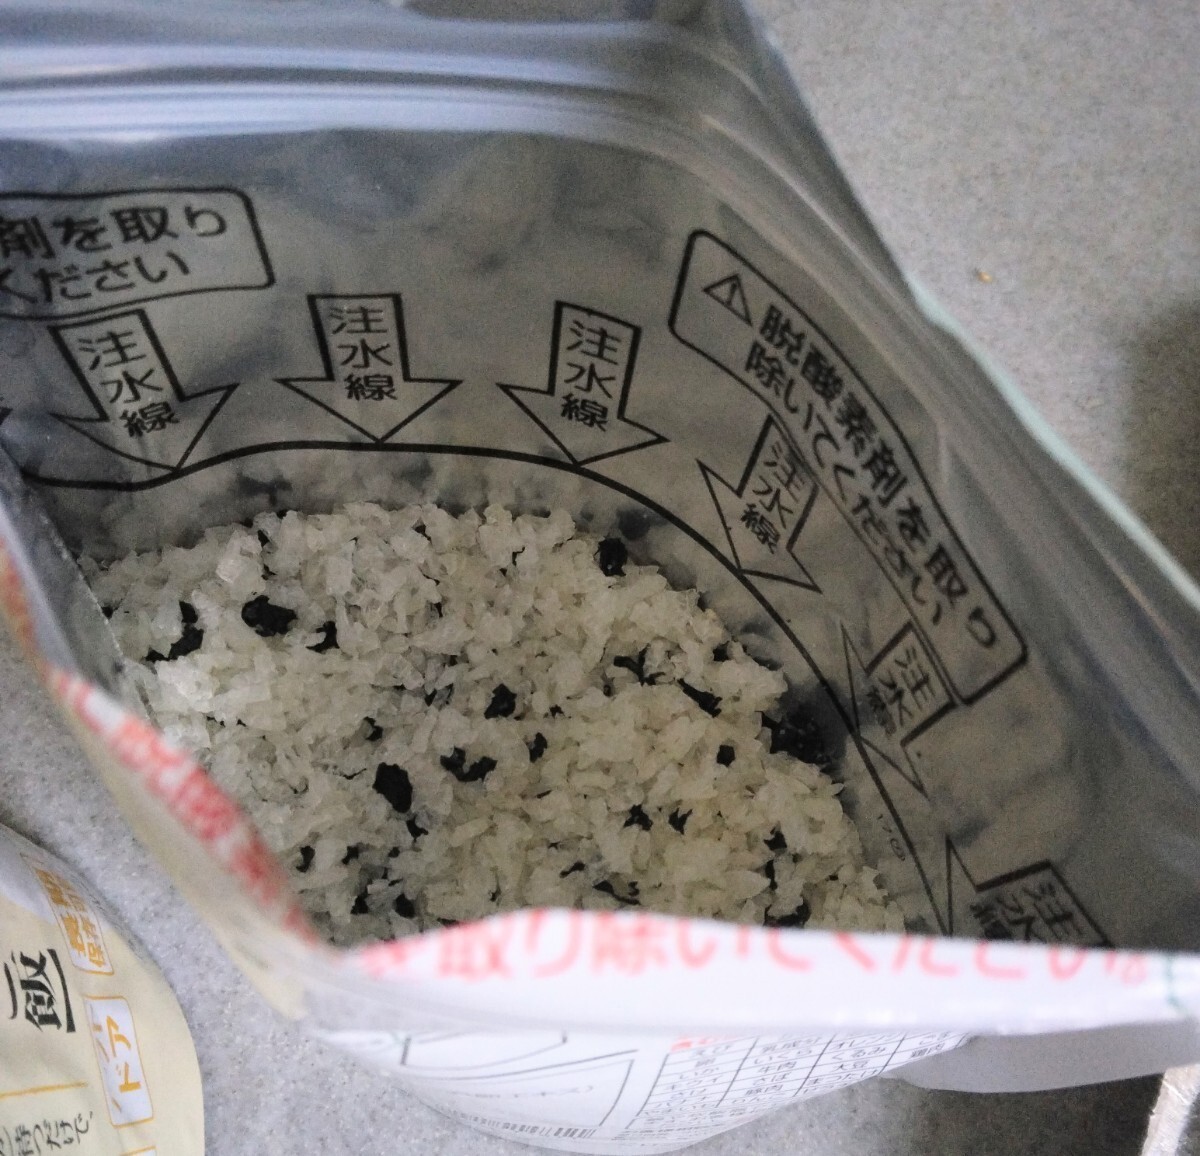 1 пакет обычная цена 410 иен безопасность рис . черепаха рис время. . рис 6 порций комплект 